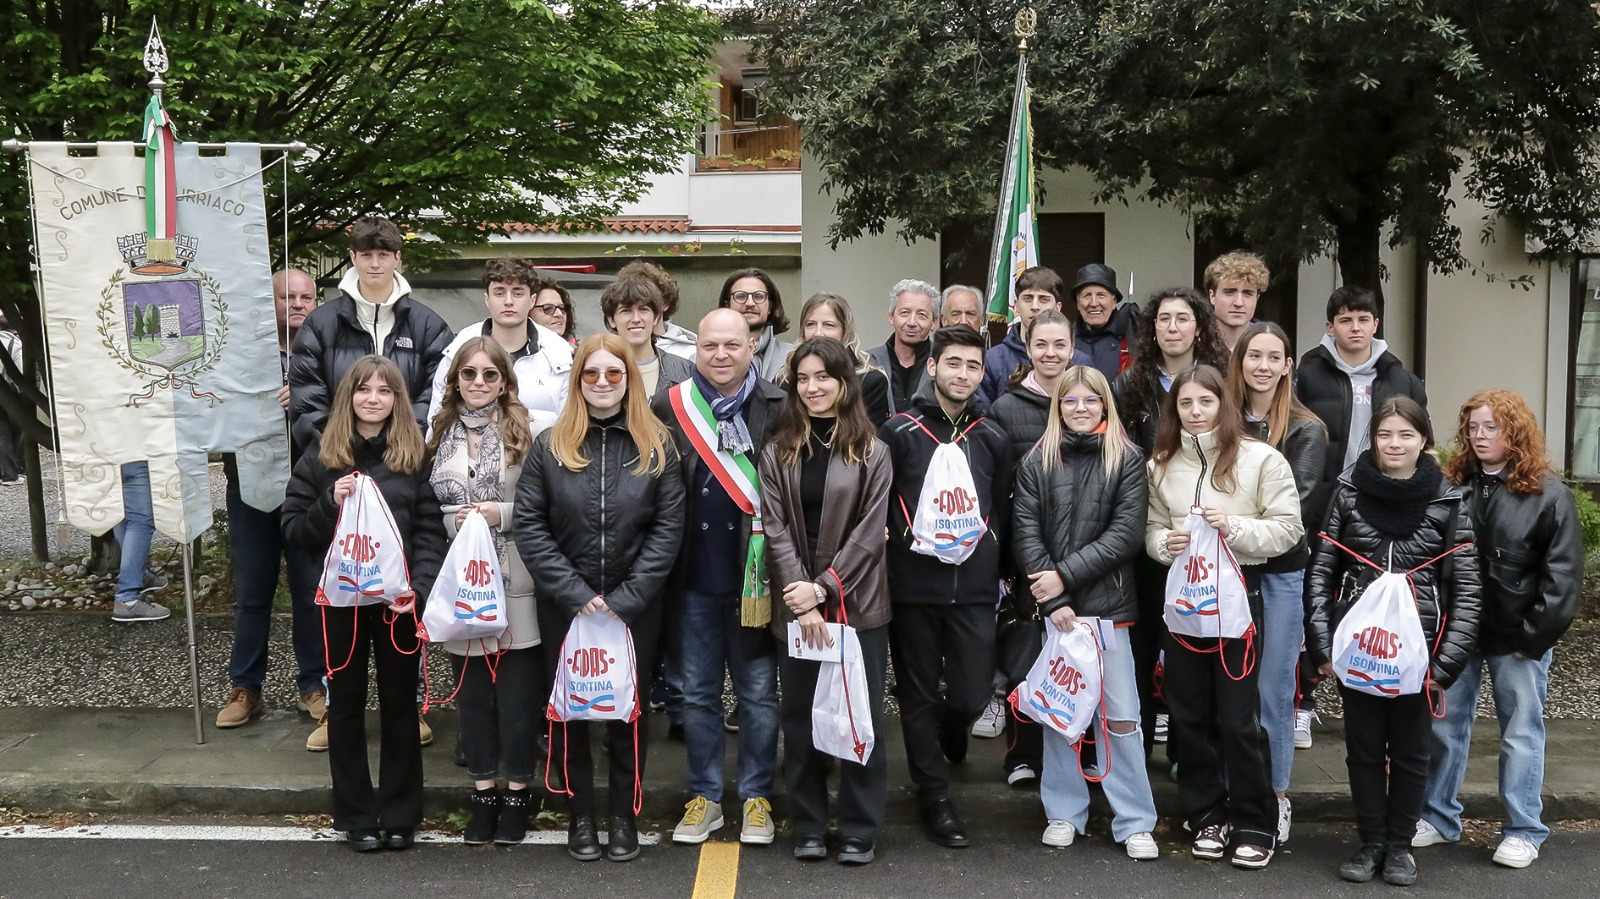 Le partigiane di San Canzian e Turriaco, comunità unite dall'antifascismo